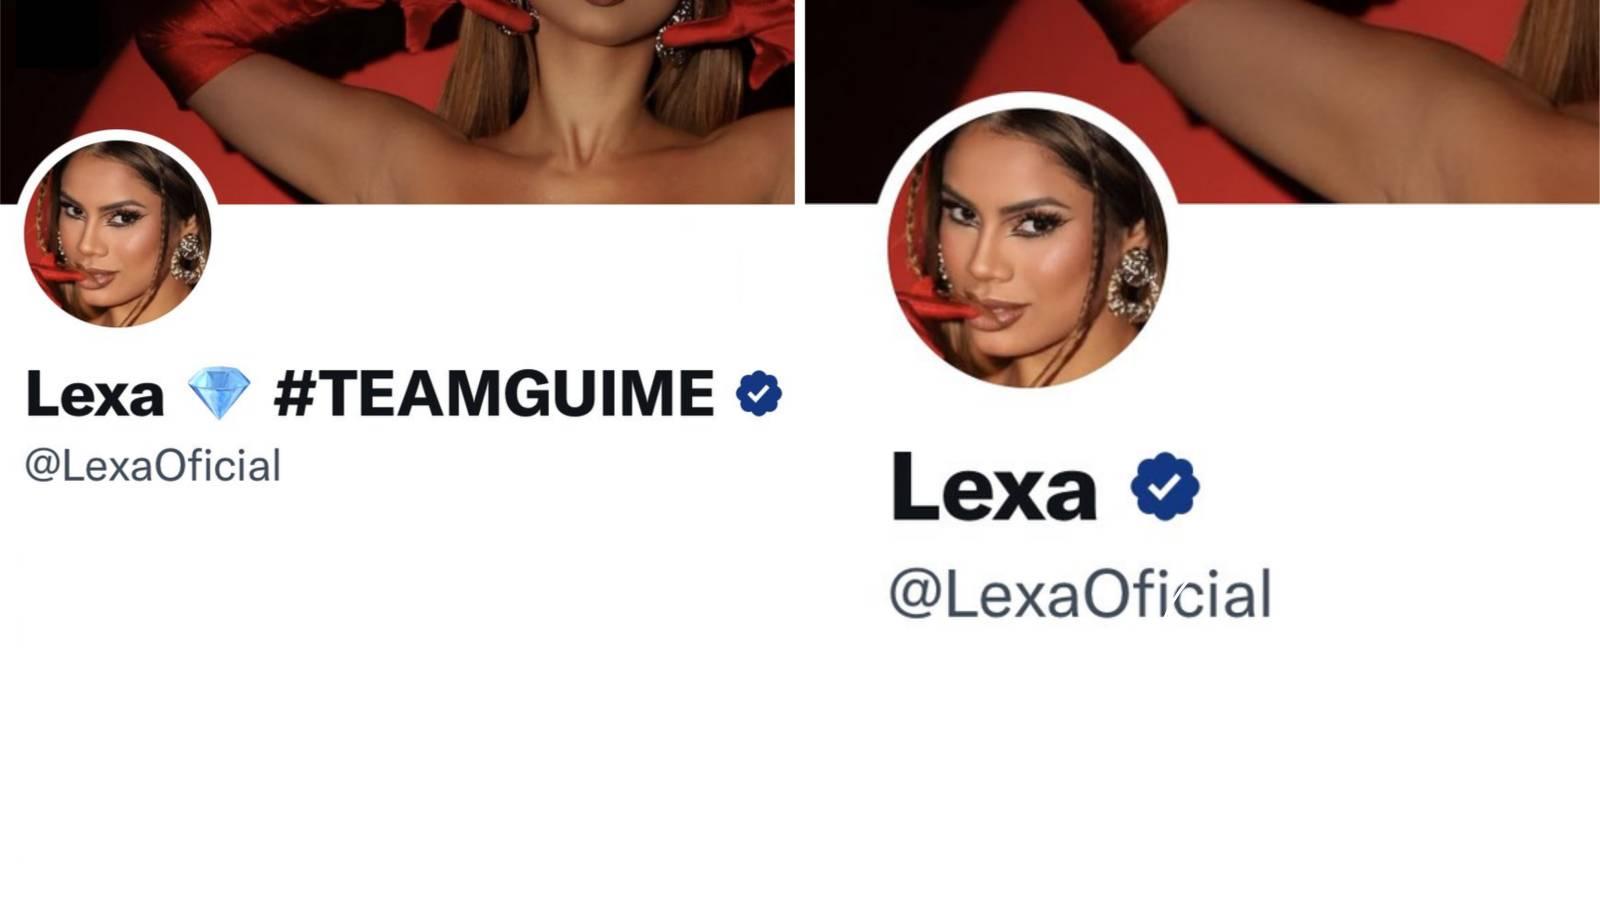 Montagem mostra antes e depois de Lexa retirar a hashtag teamguime do nome de usuário do Twitter